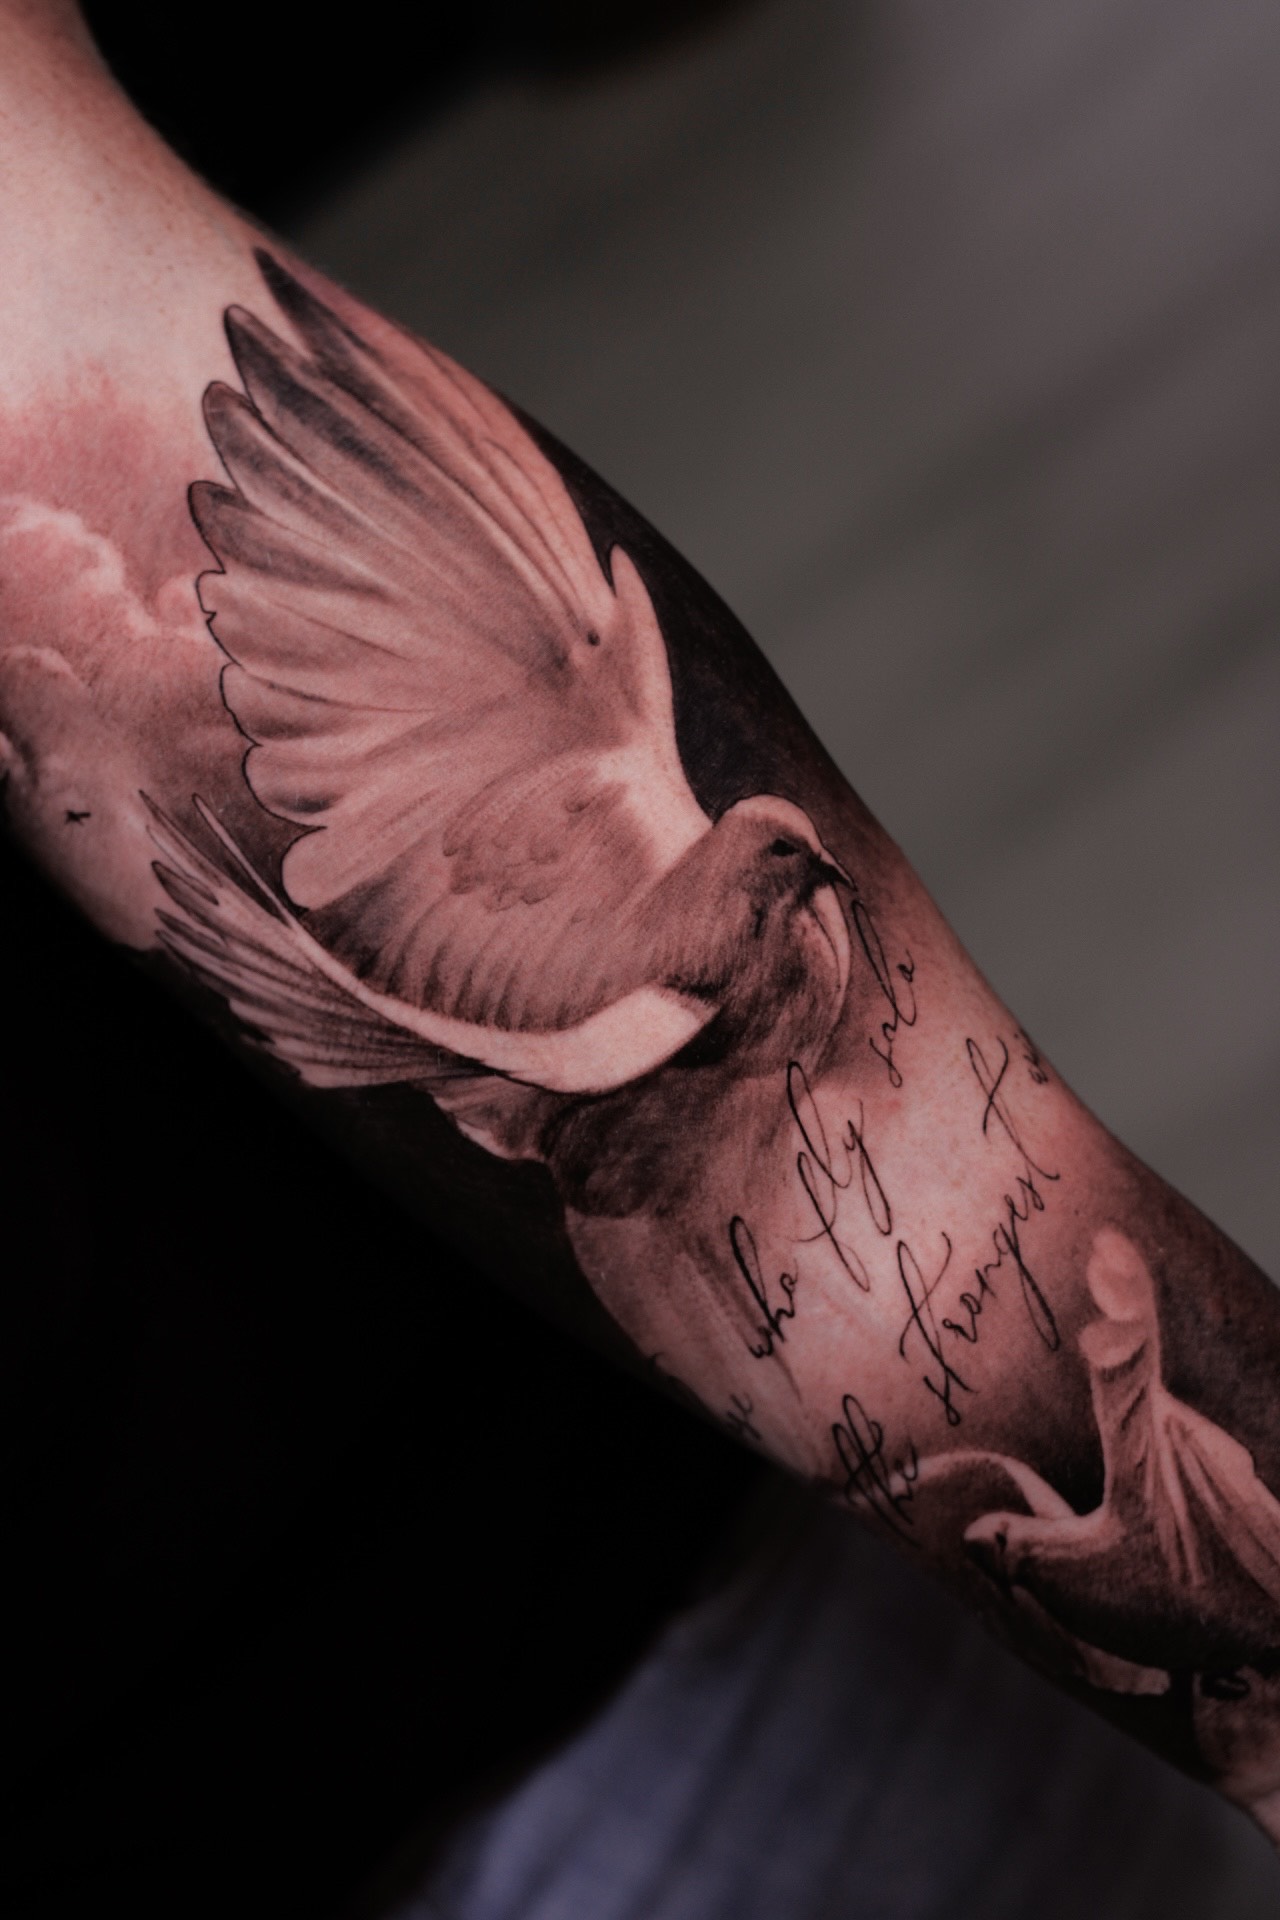 Black and grey tattoo realism by Chris Adamek | iNKPPL